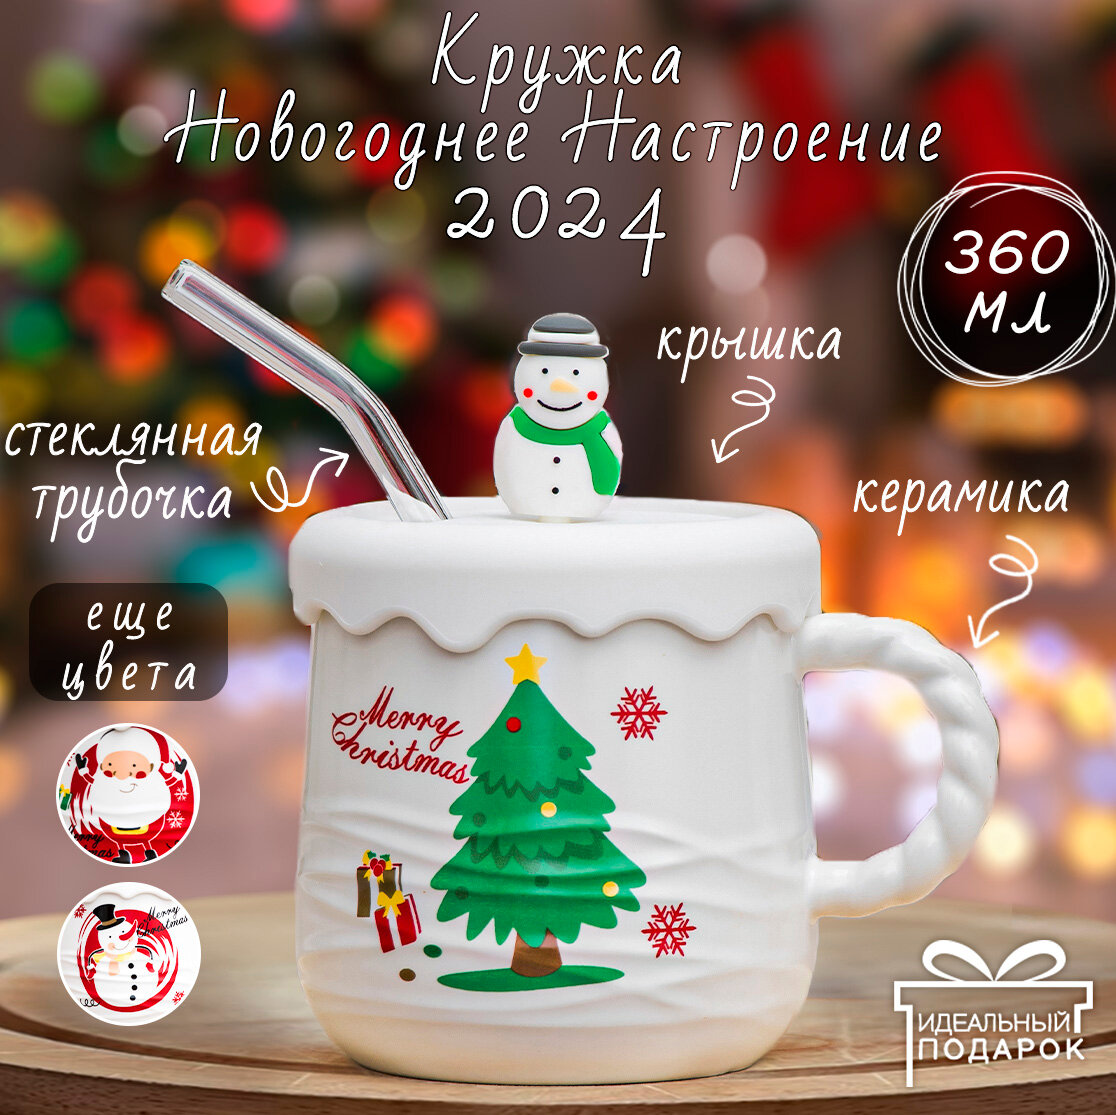 Кружка Новый год Серия N 10 (N 2) Merry Christmas Елка 410 мл Эврика чашка с крышкой и стеклянной трубочкой, новогодняя, подарочная, символ года